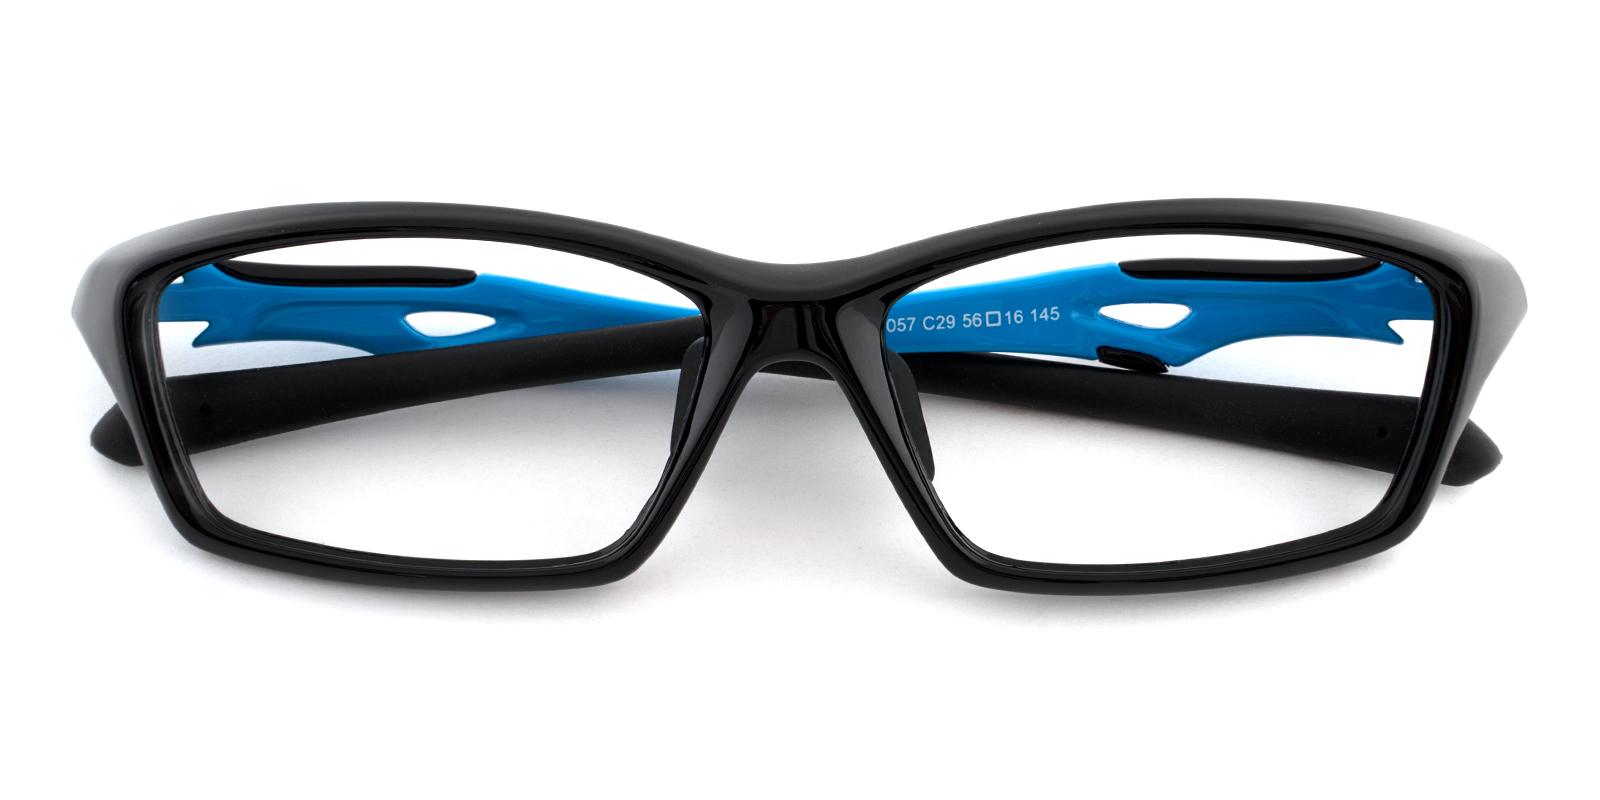 Kite Black TR NosePads , SportsGlasses Frames from ABBE Glasses